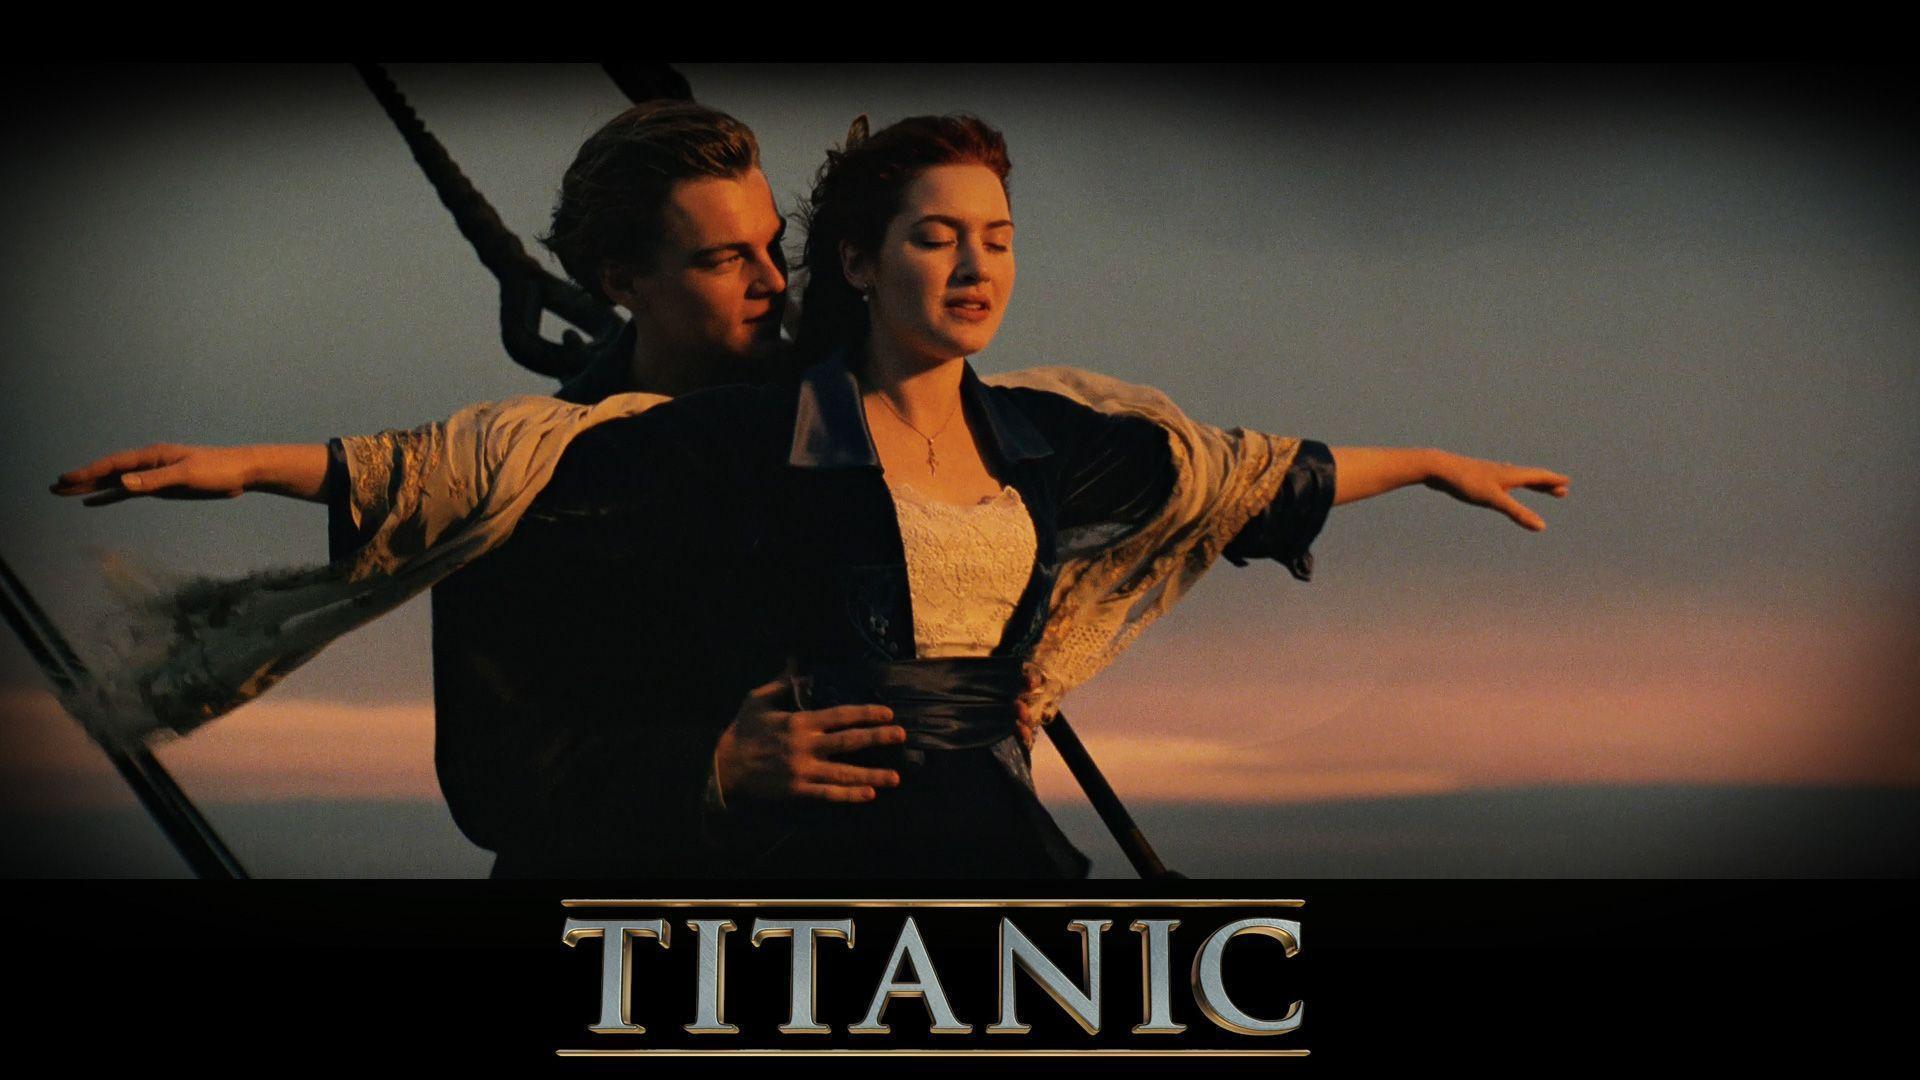 Titanic Movie Love Wallpaper Wallpaper. WallpaperTube